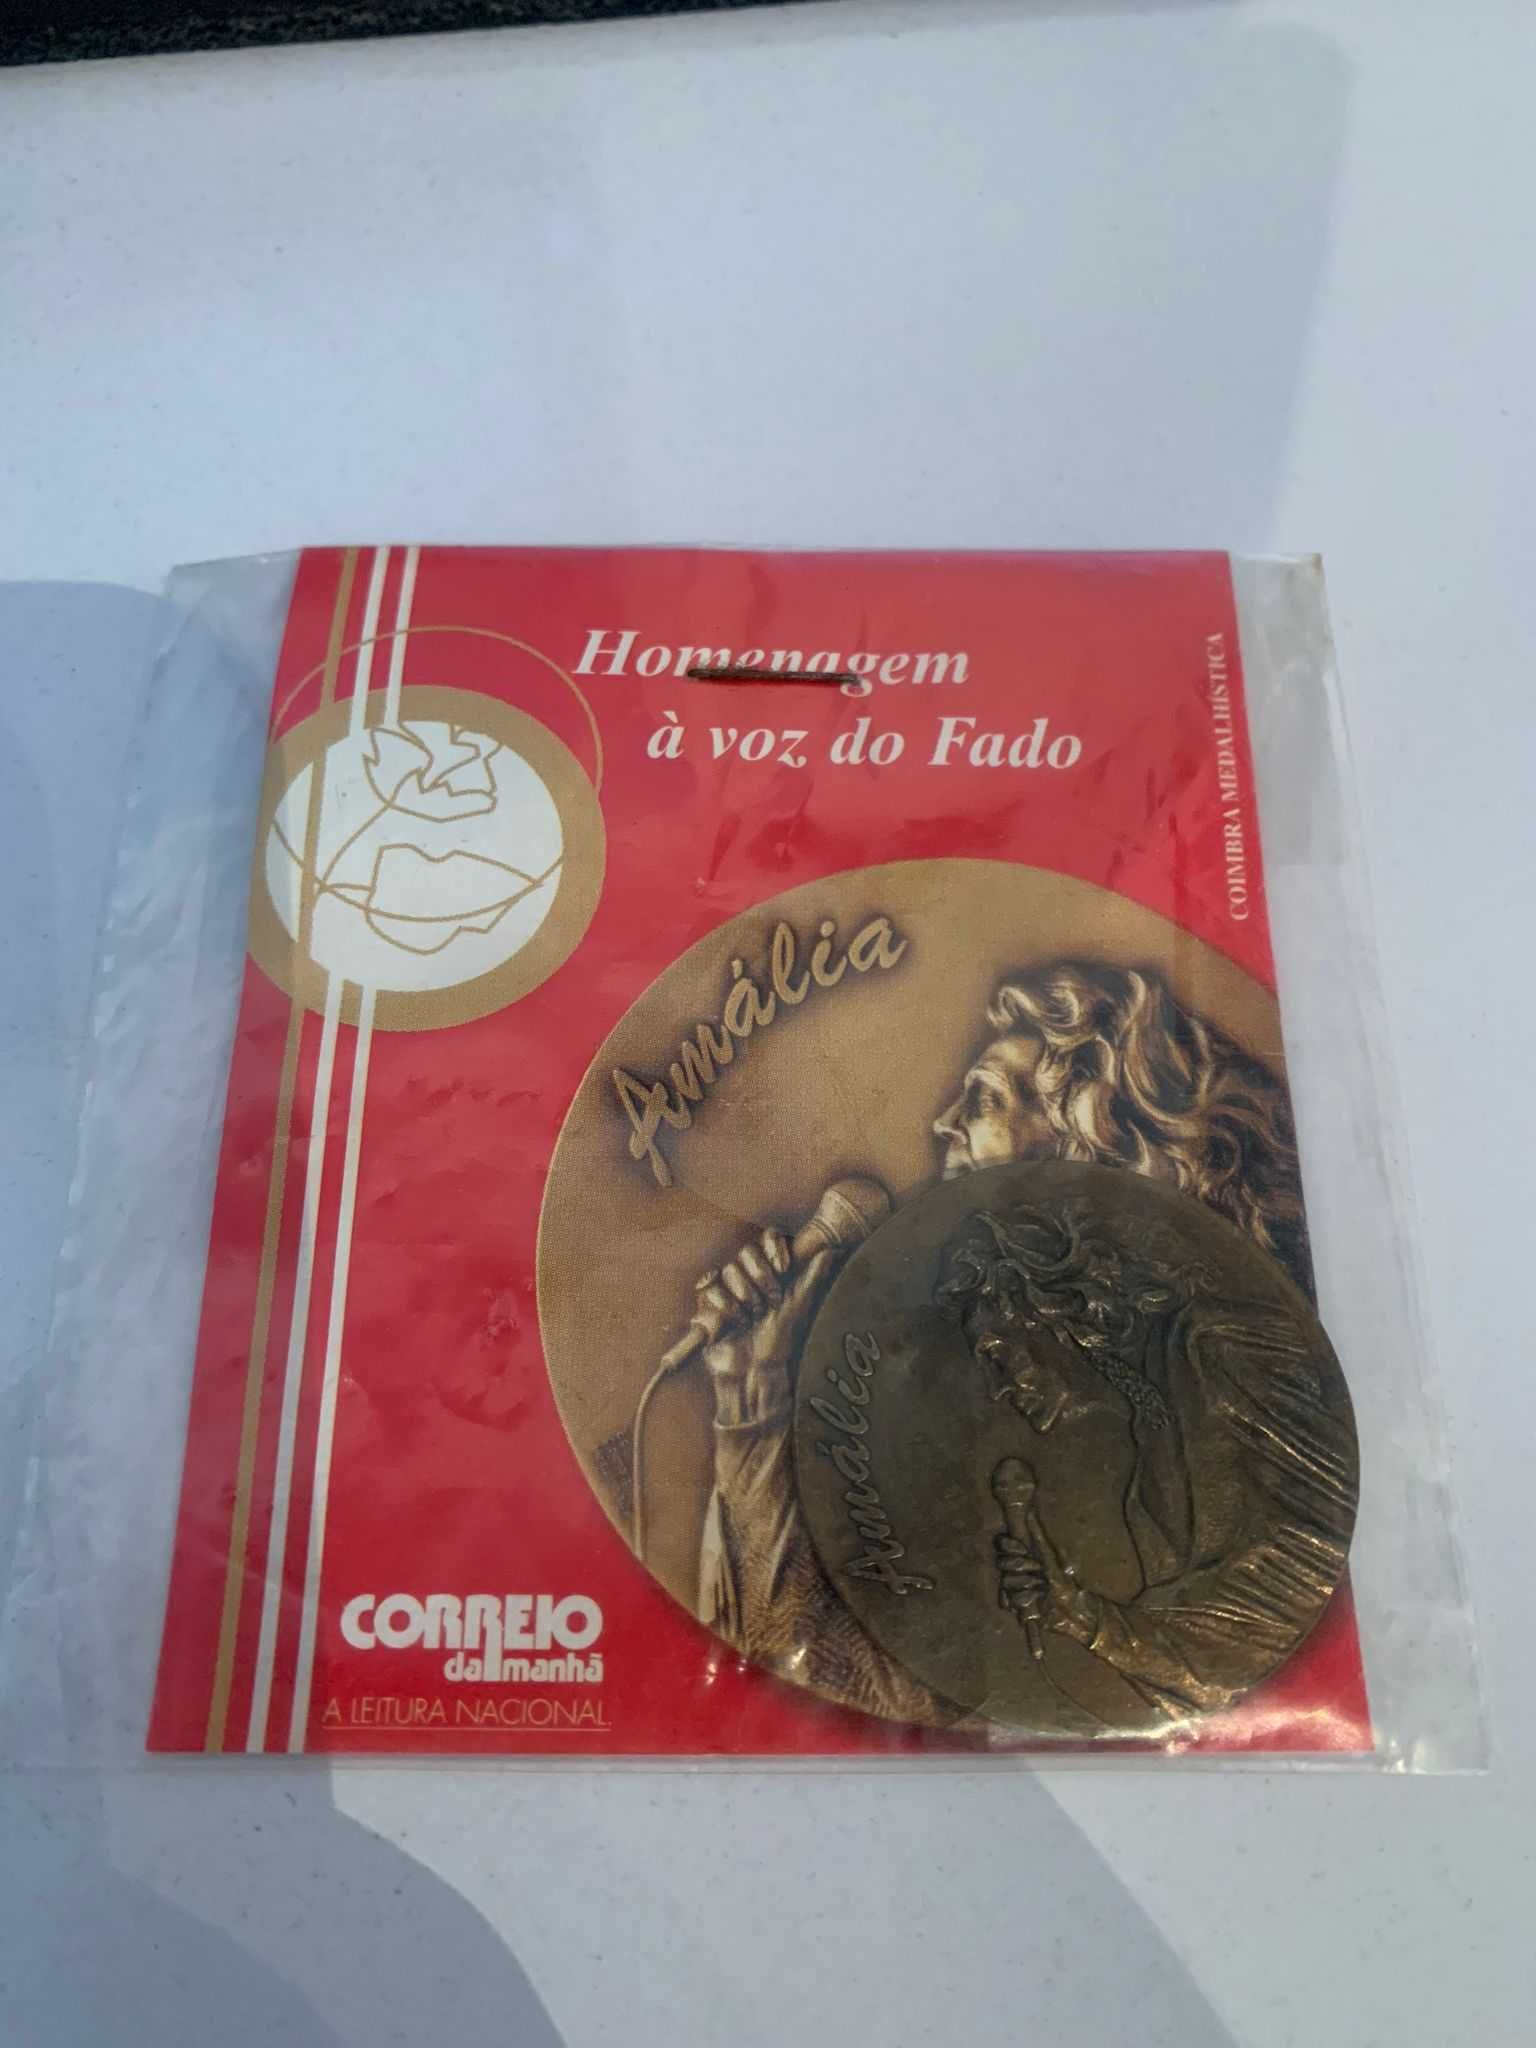 Medalha "Homenagem à voz do Fado" 1999